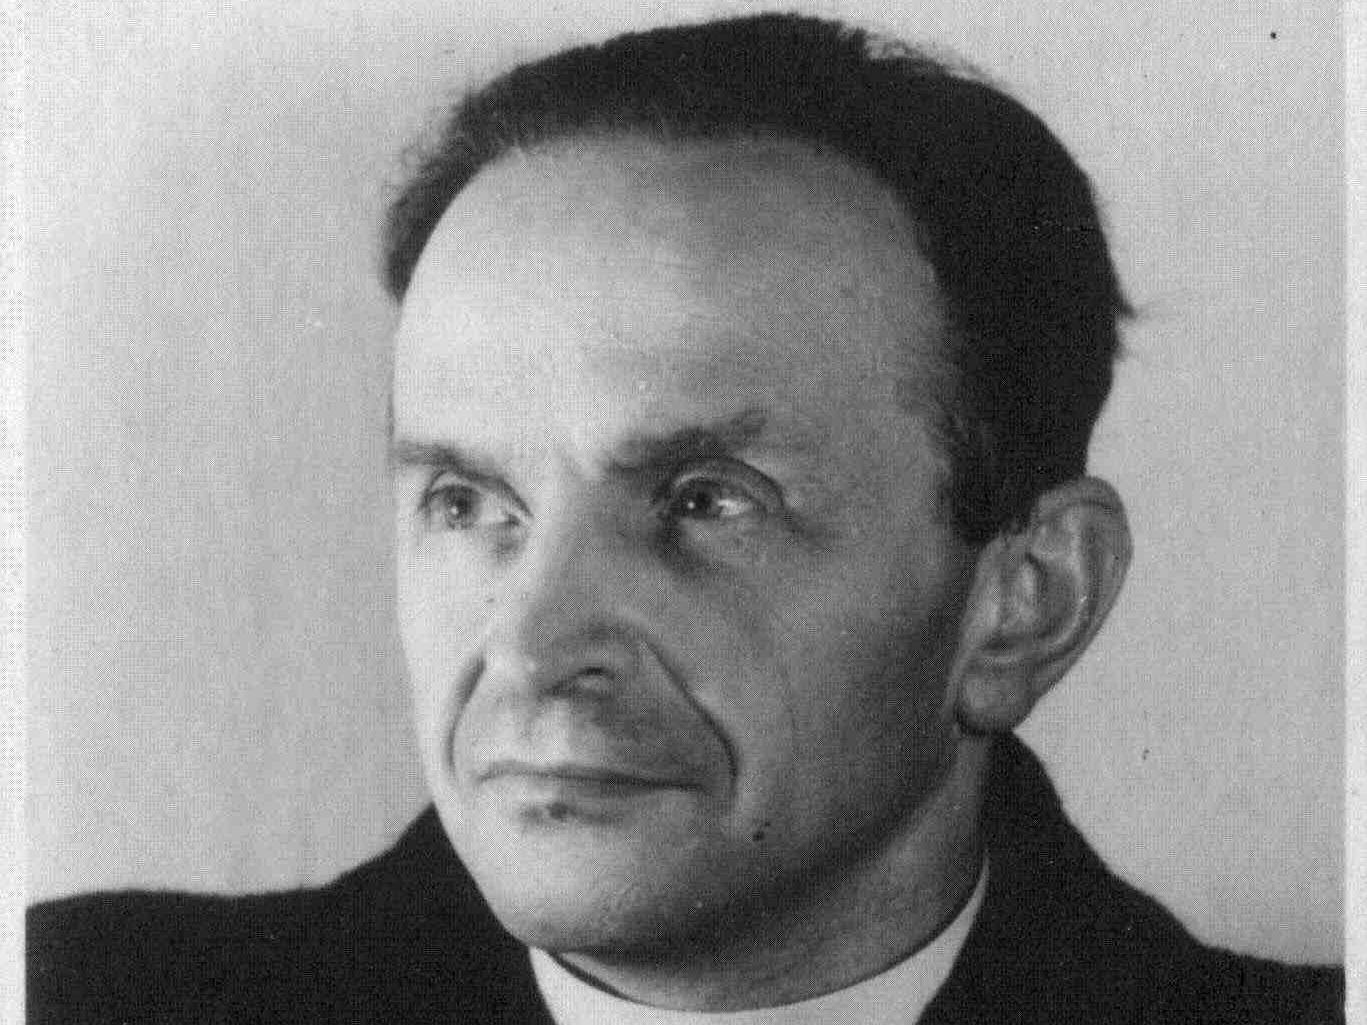 Il gesuita Adolf Kajpr, perseguitato da nazisti e comunisti, verso la beatificazione